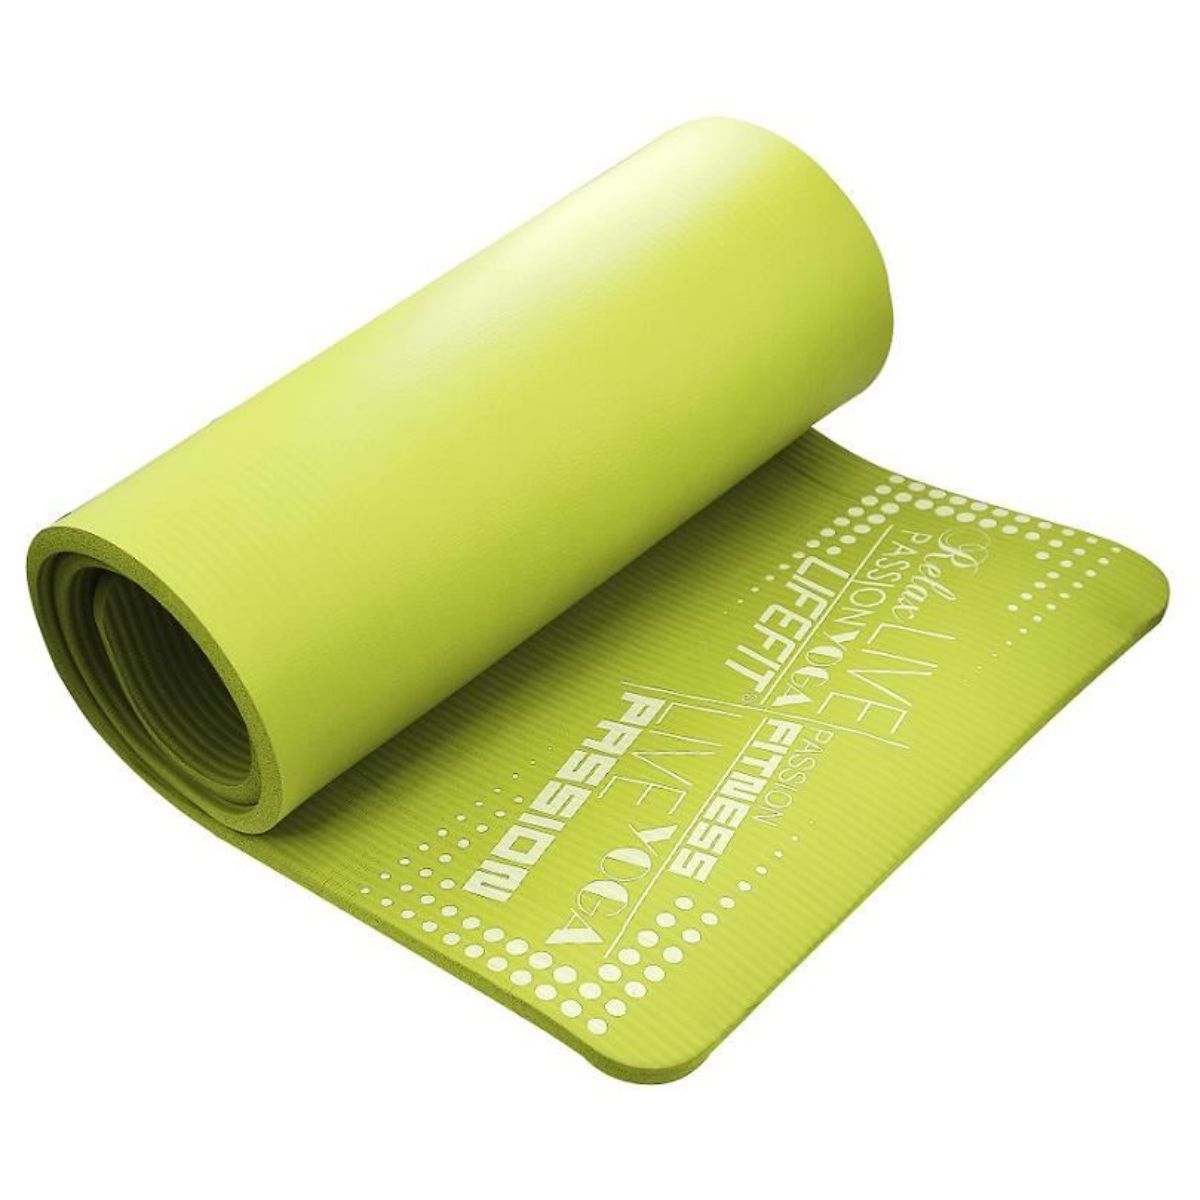 Covoras yoga Exclusive Plus DHS, Verde, 180 cm DHS